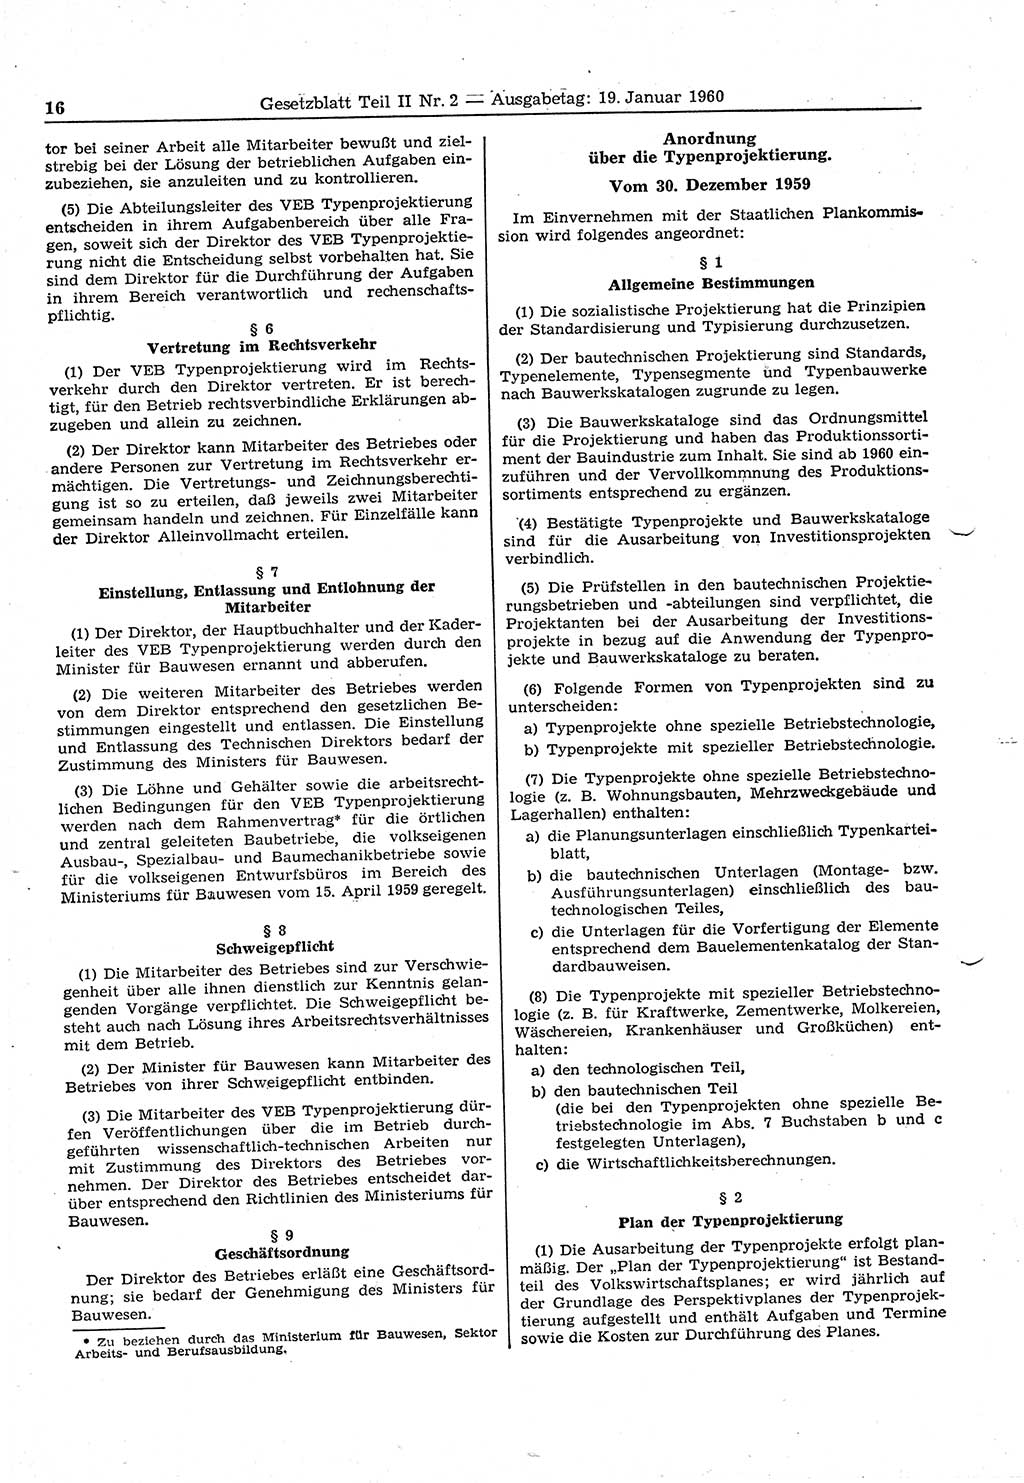 Gesetzblatt (GBl.) der Deutschen Demokratischen Republik (DDR) Teil ⅠⅠ 1960, Seite 16 (GBl. DDR ⅠⅠ 1960, S. 16)